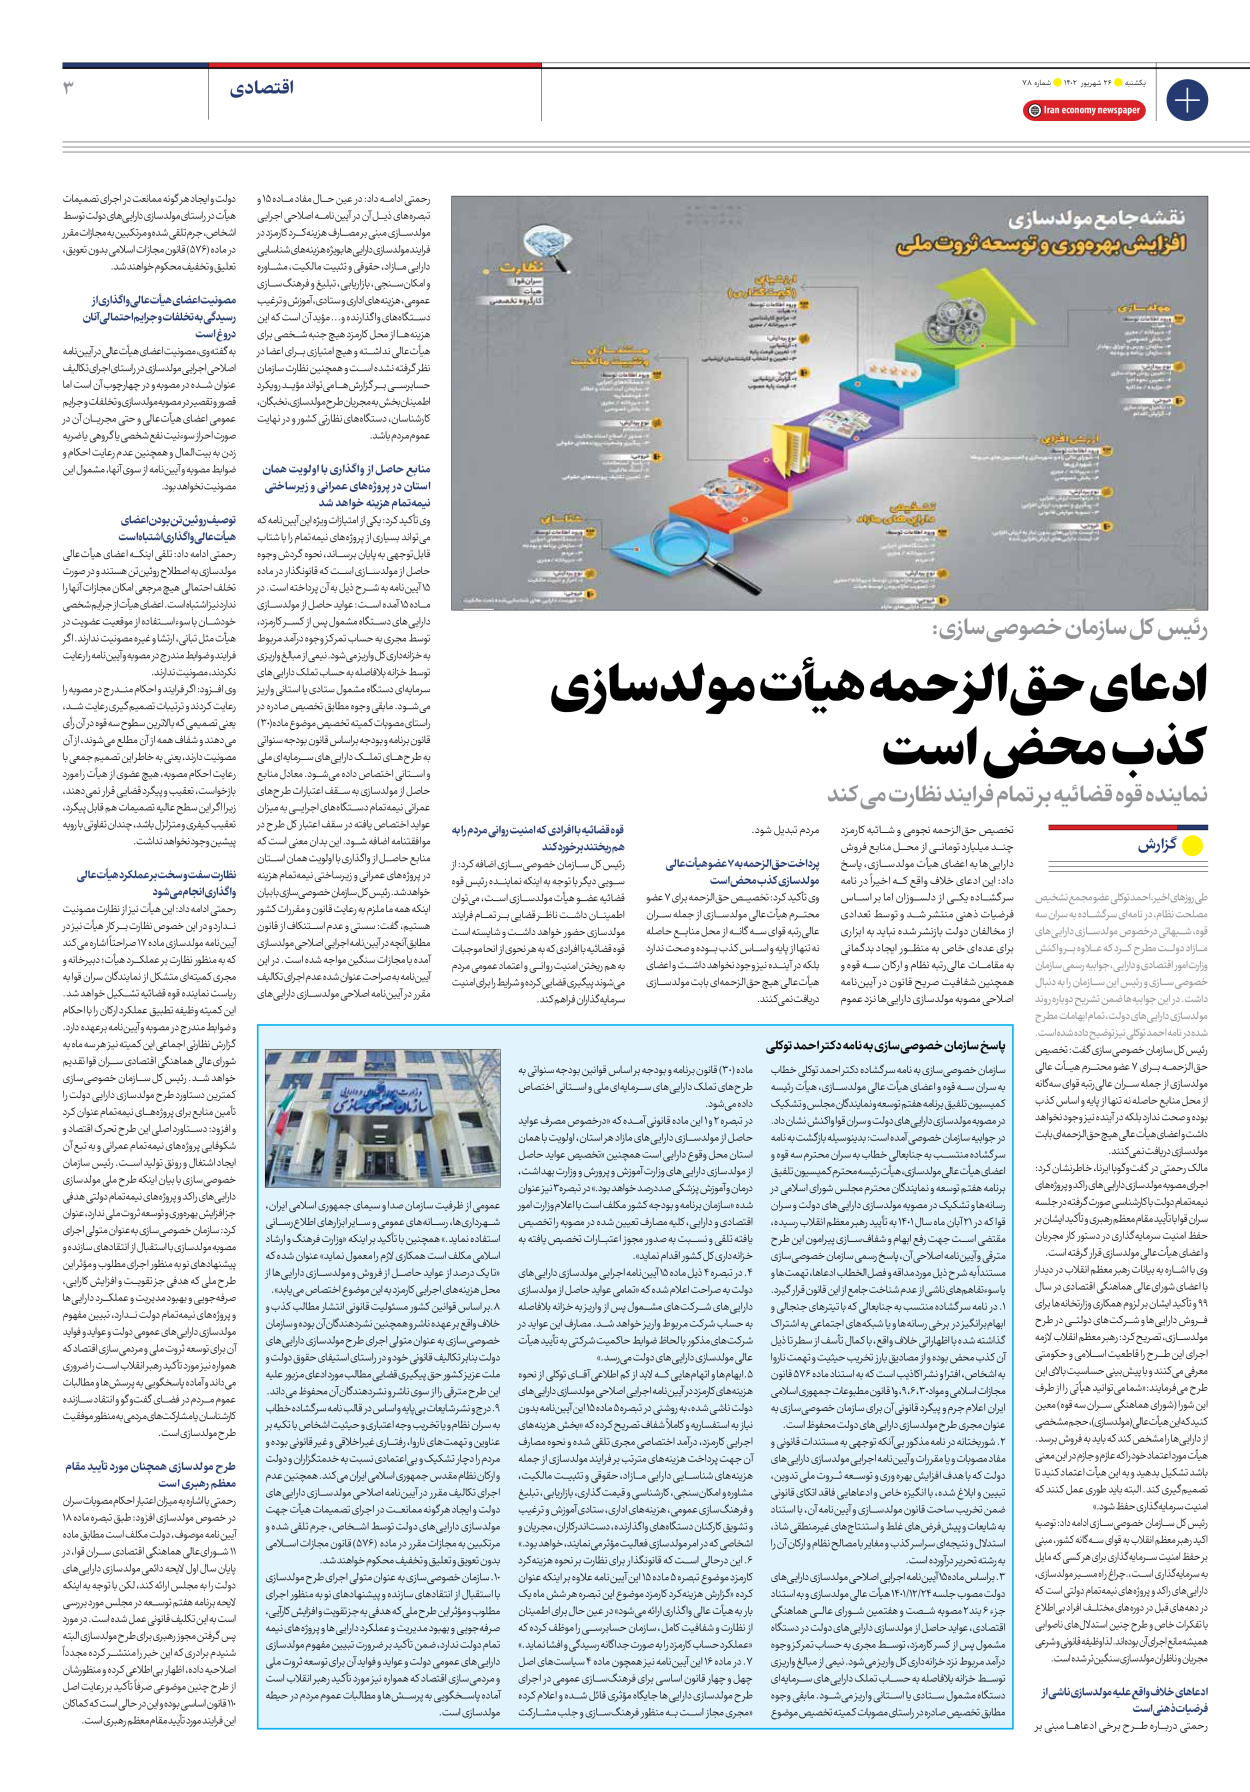 روزنامه ایران اقتصادی - شماره هفتاد و هشت - ۲۶ شهریور ۱۴۰۲ - صفحه ۳